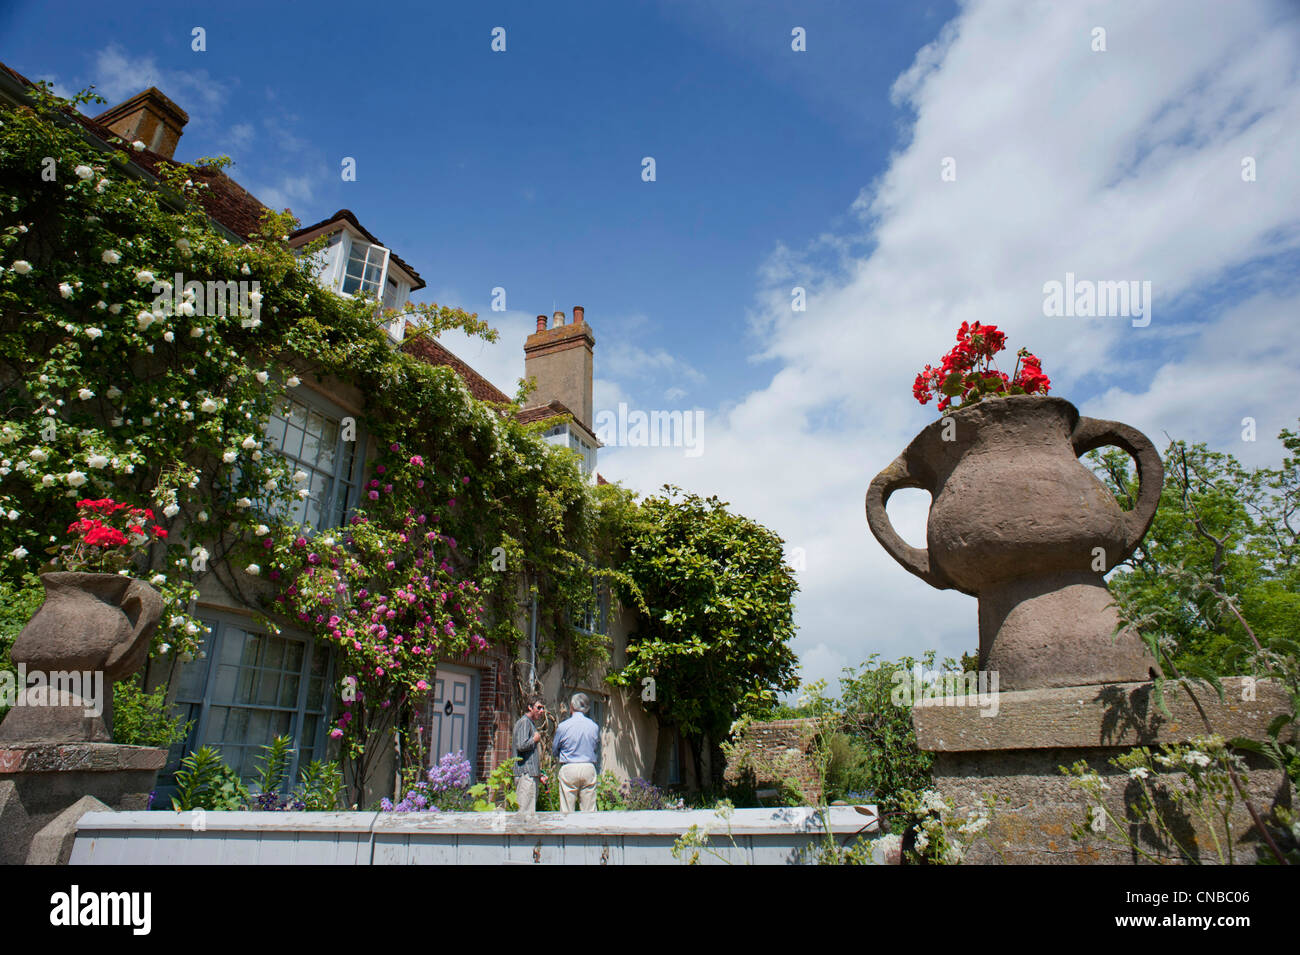 Charleston Farmhouse, près de Lewes, East Sussex, Angleterre, accueil du Bloomsbury Set. Banque D'Images